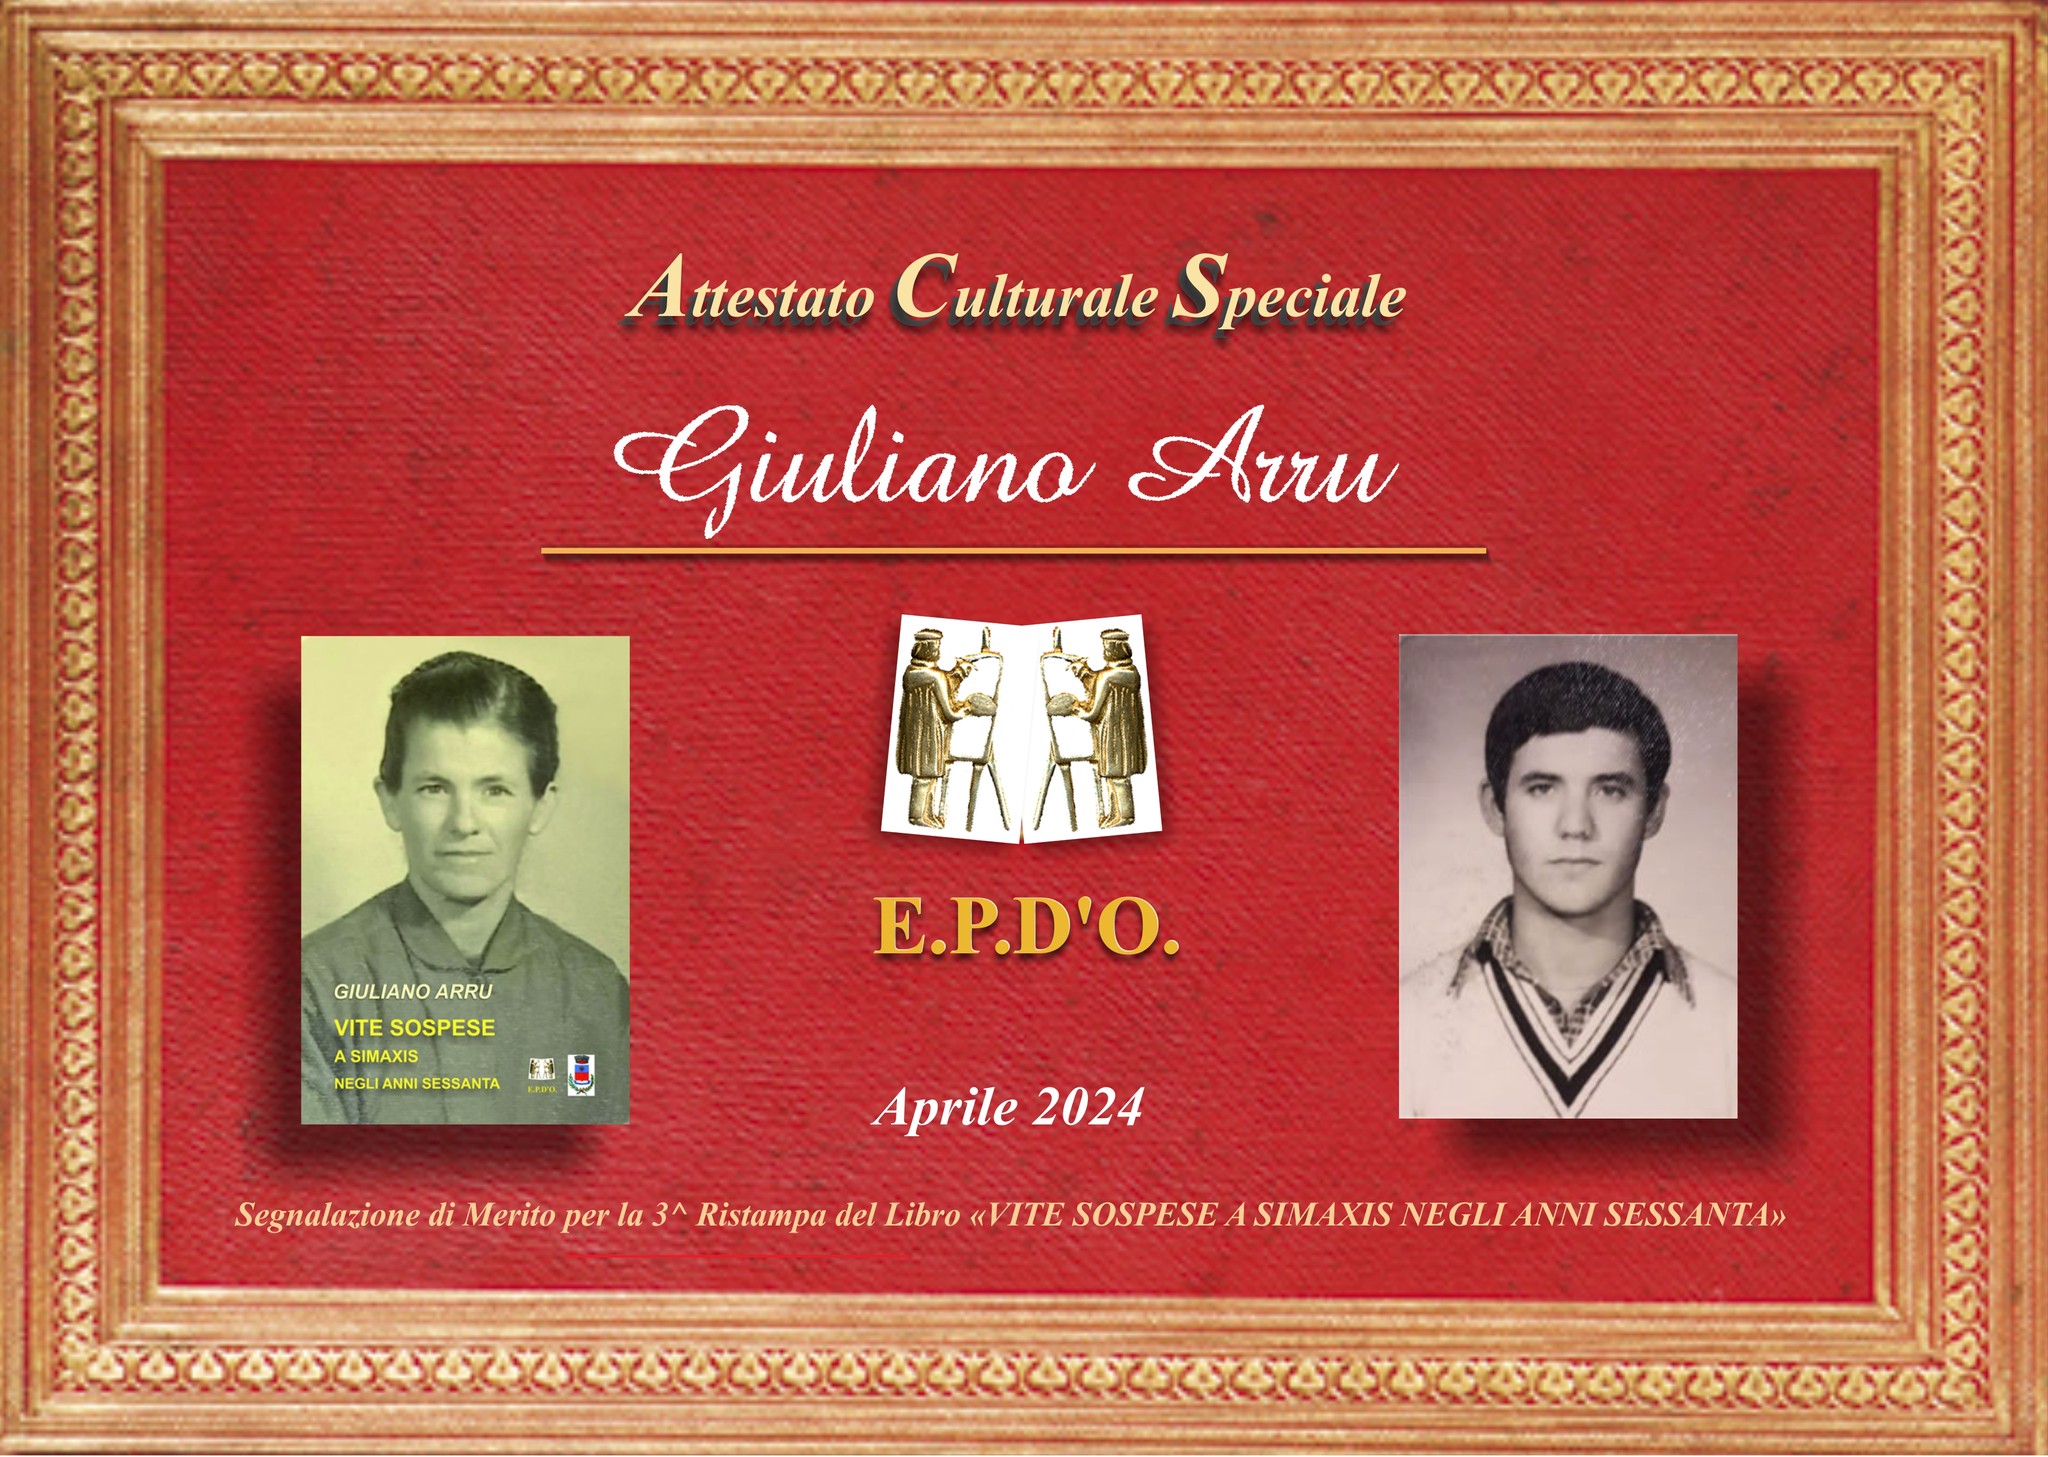 EPDO - Attestato Speciale Giuliano Arru